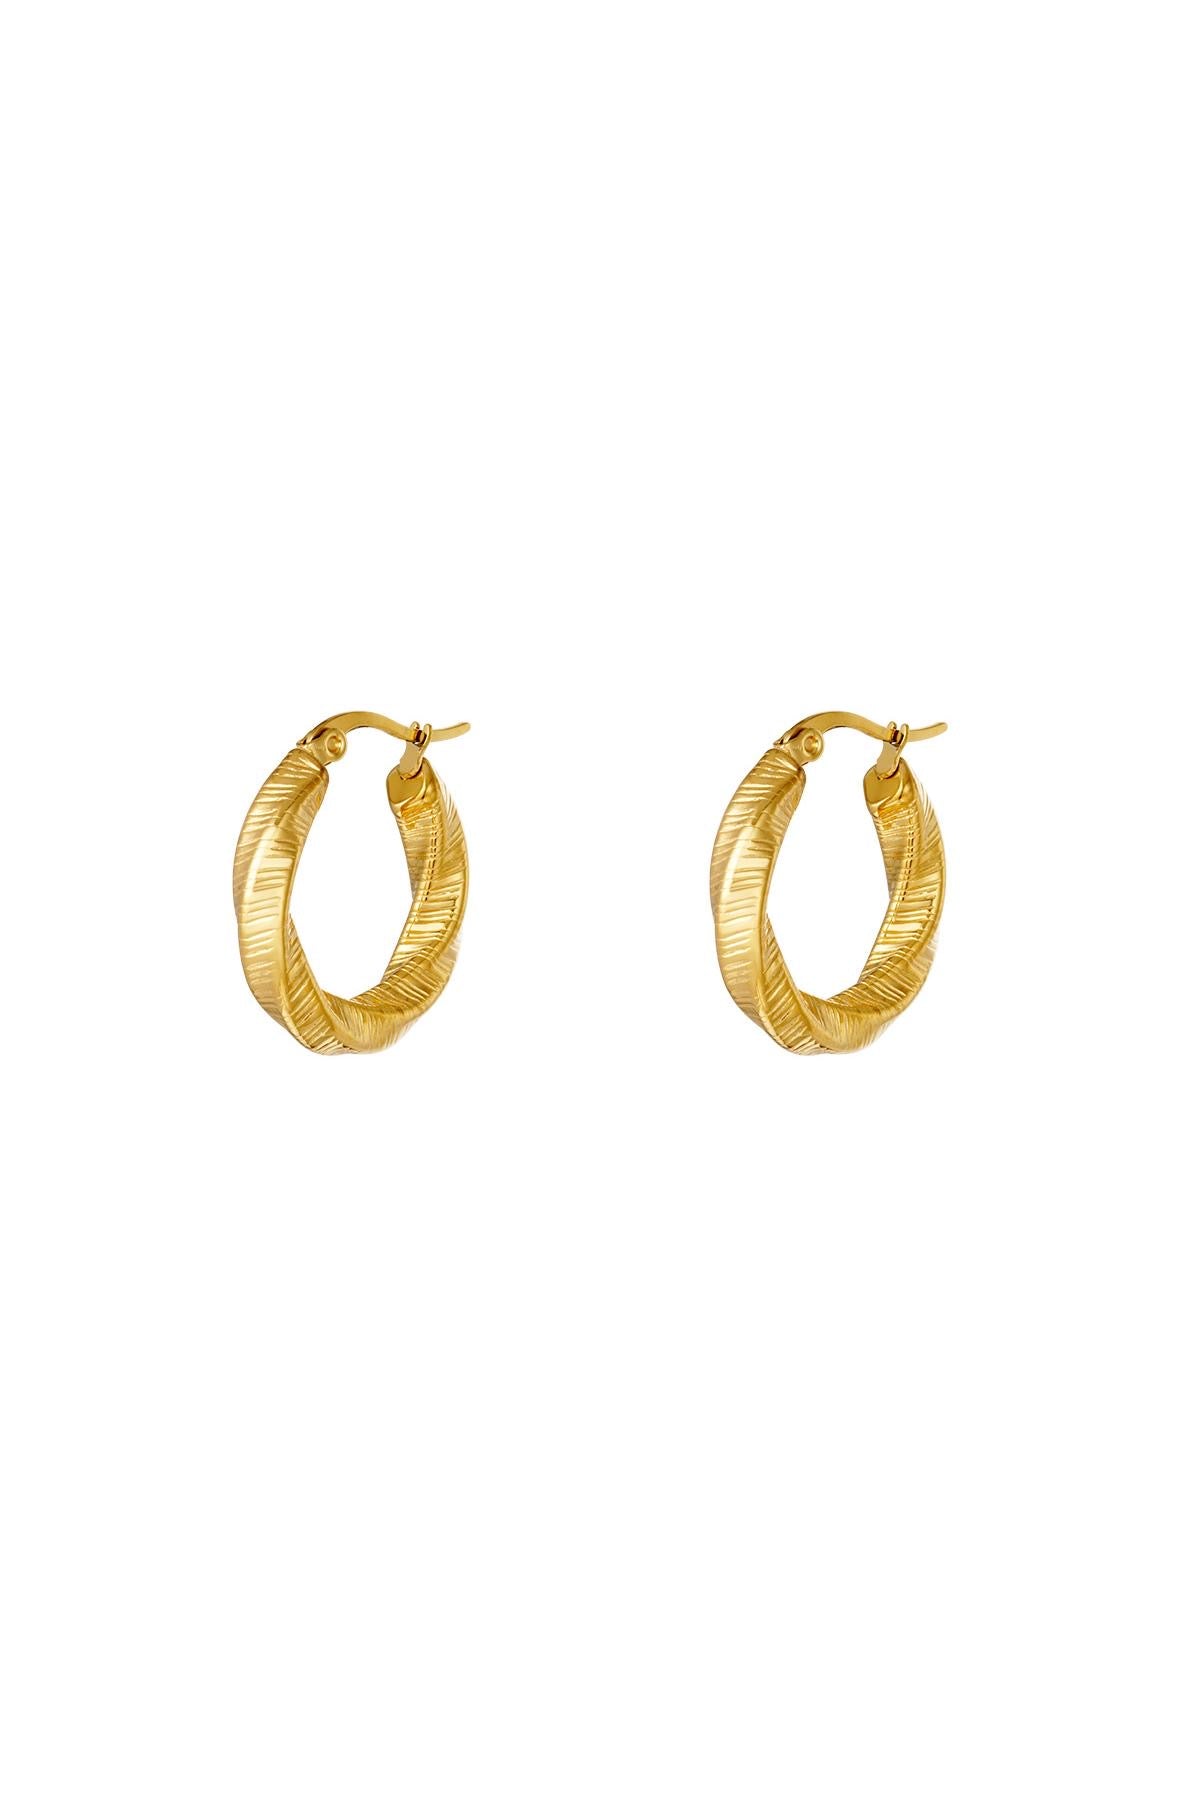 Jet earrings - small - goud